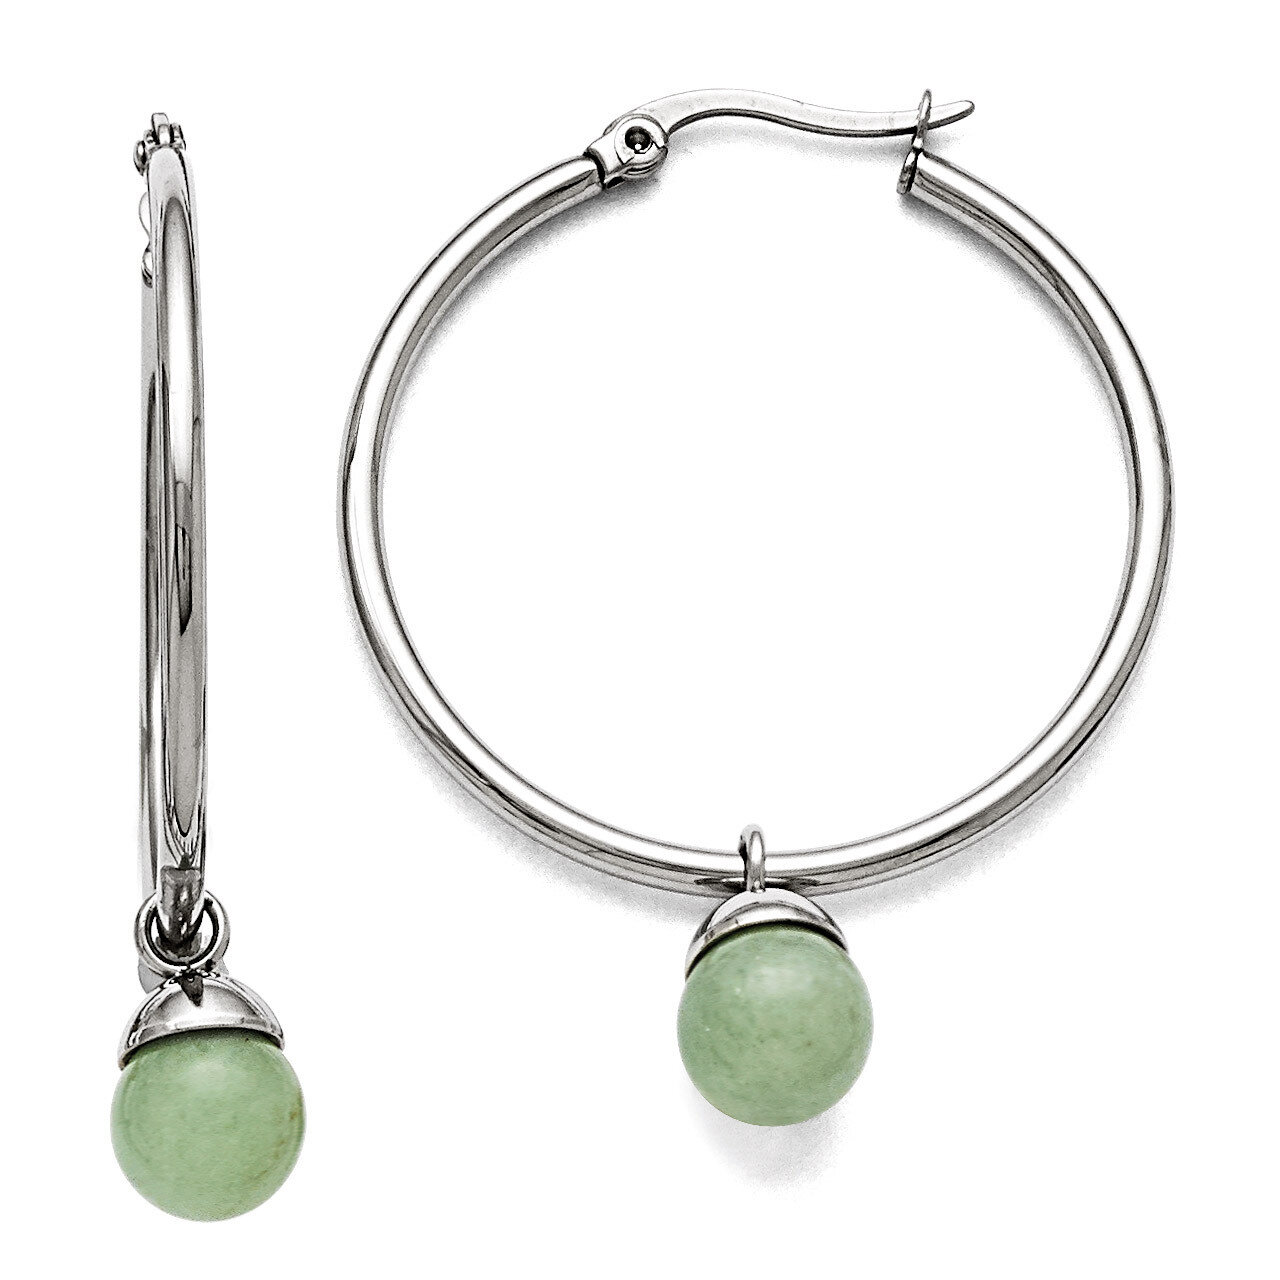 Polished Hinged Hoop with Green Aventurine Bead Earrings - Stainless Steel SRE802